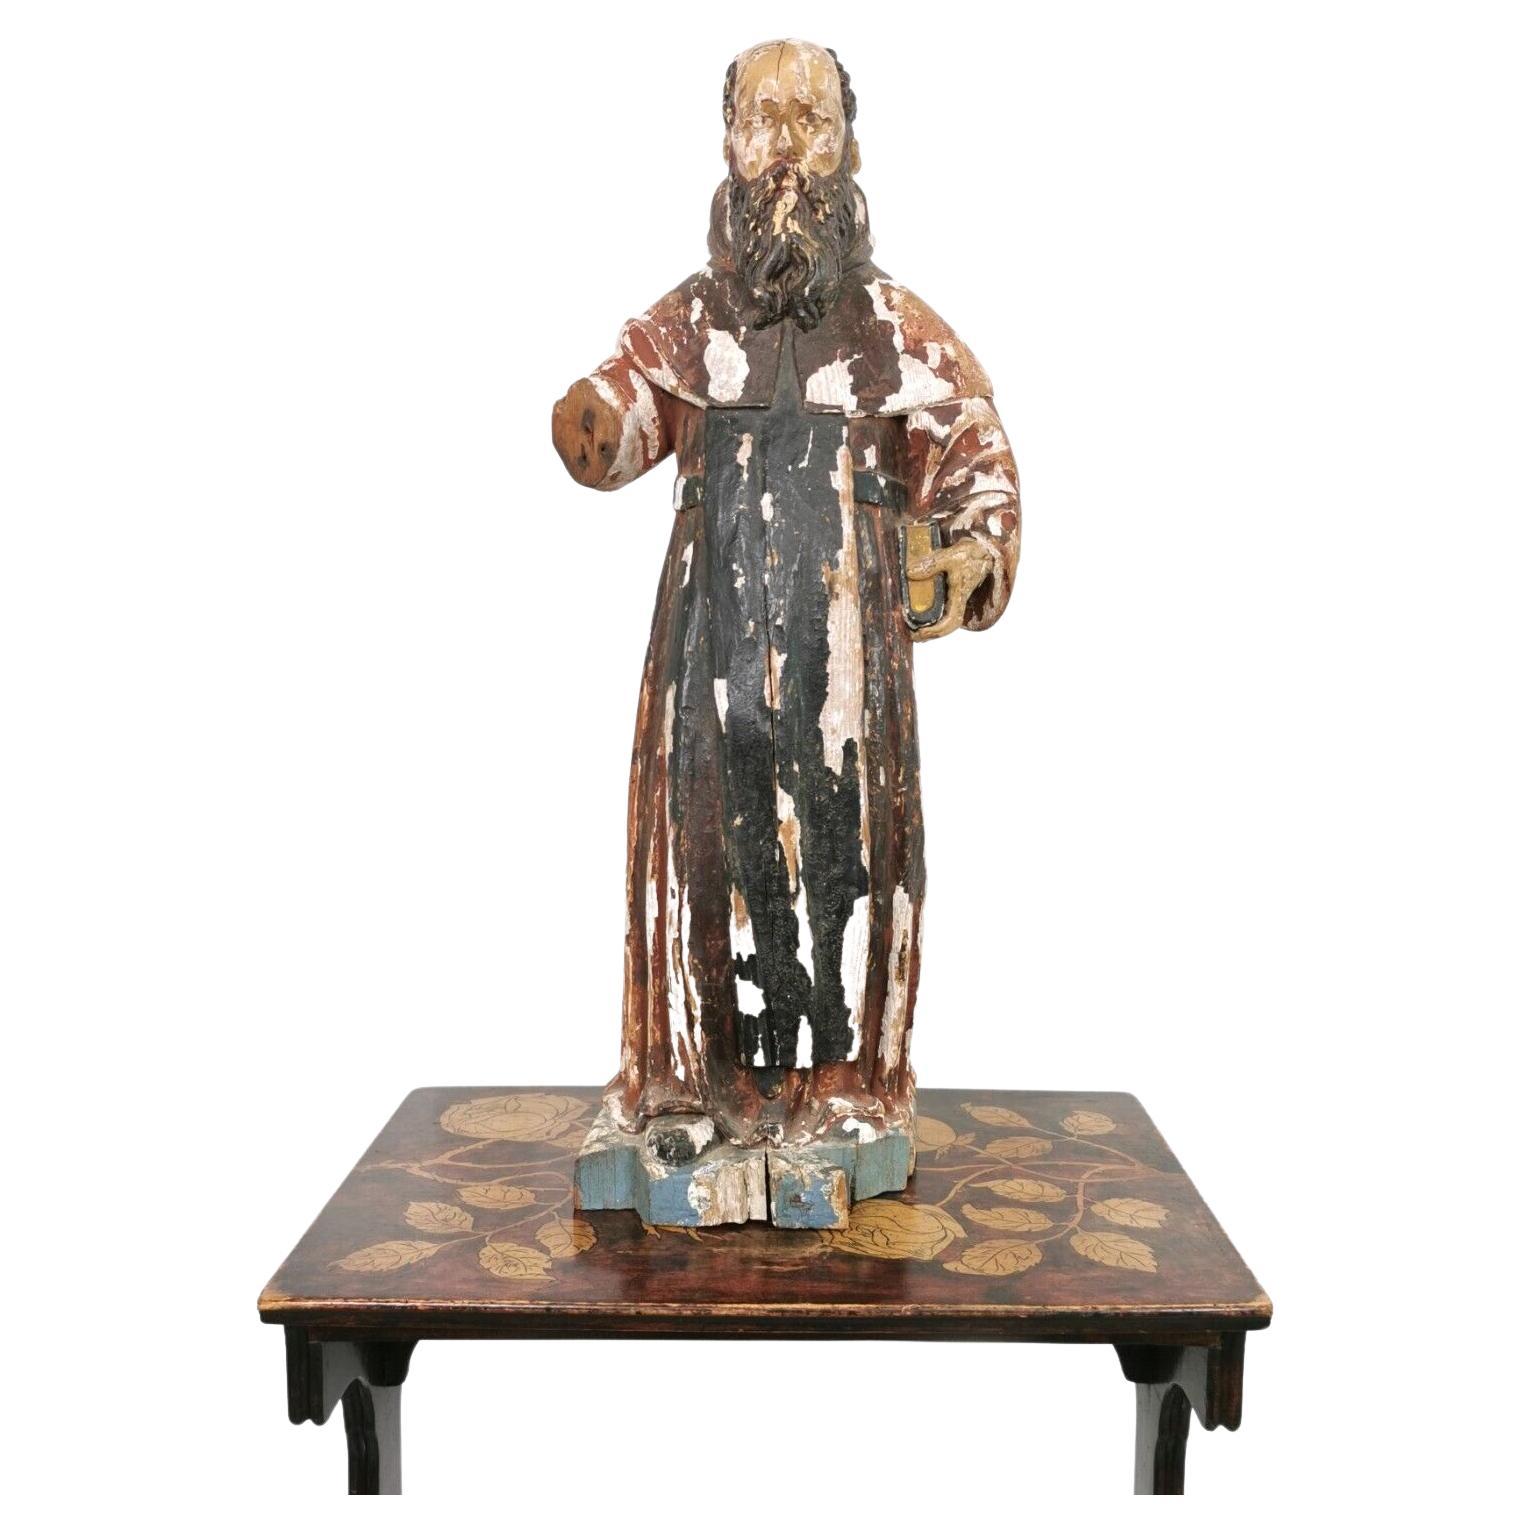 Religiöse Figur des südeuropäischen Heiligen/Santos aus dem 18. Jahrhundert, polychrom